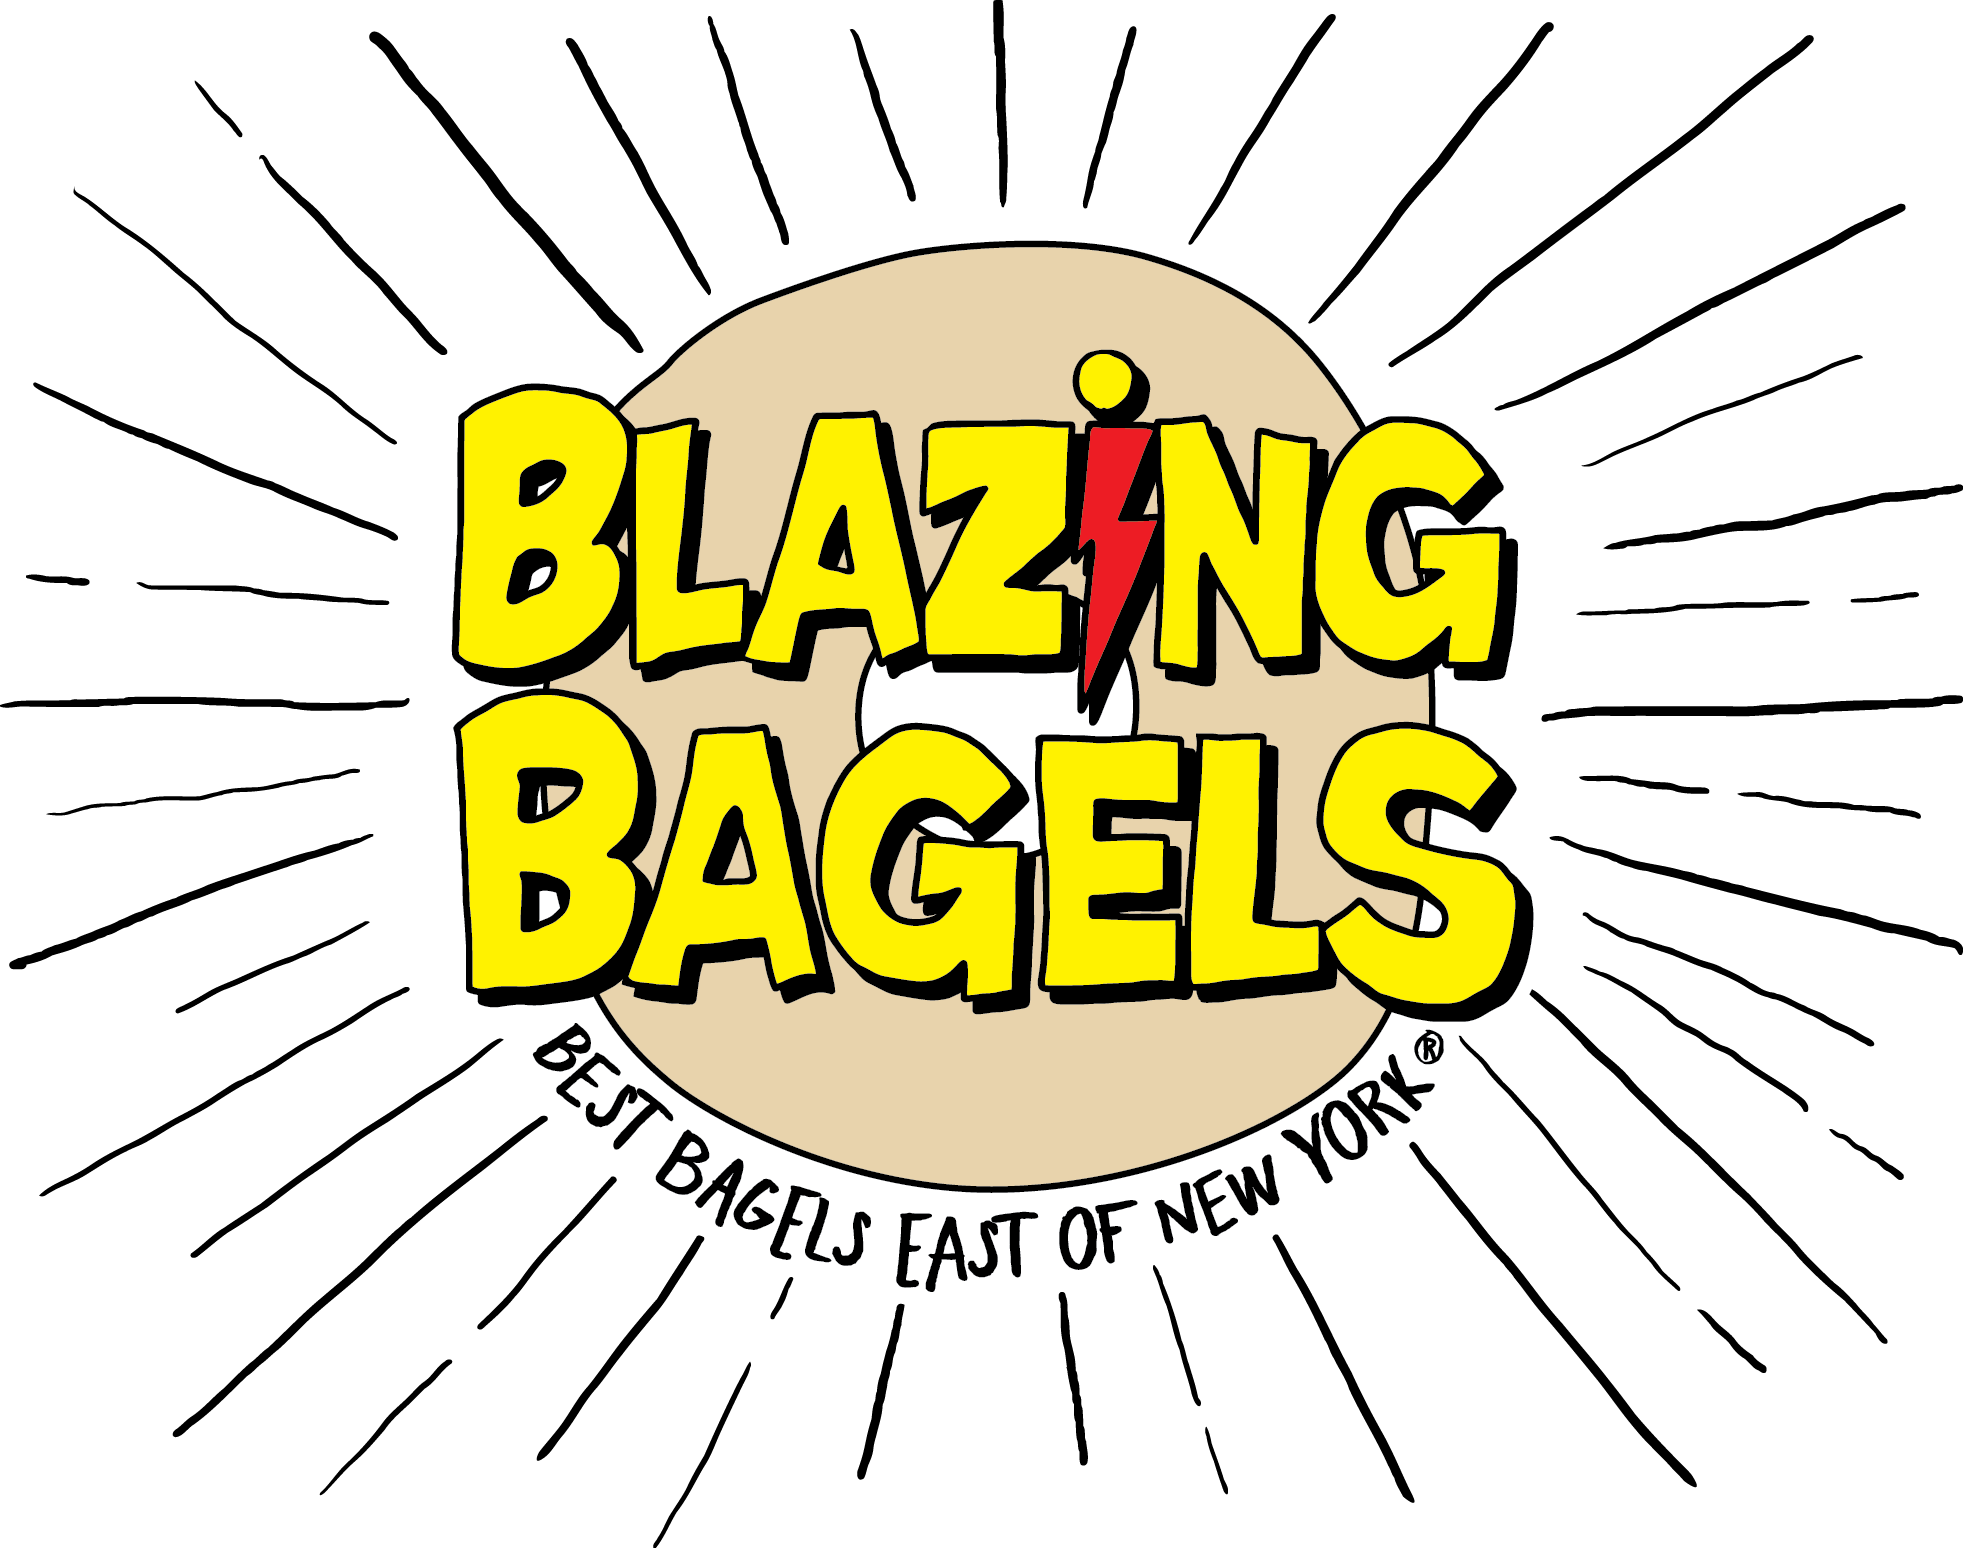 Blazing Bagels - SODO